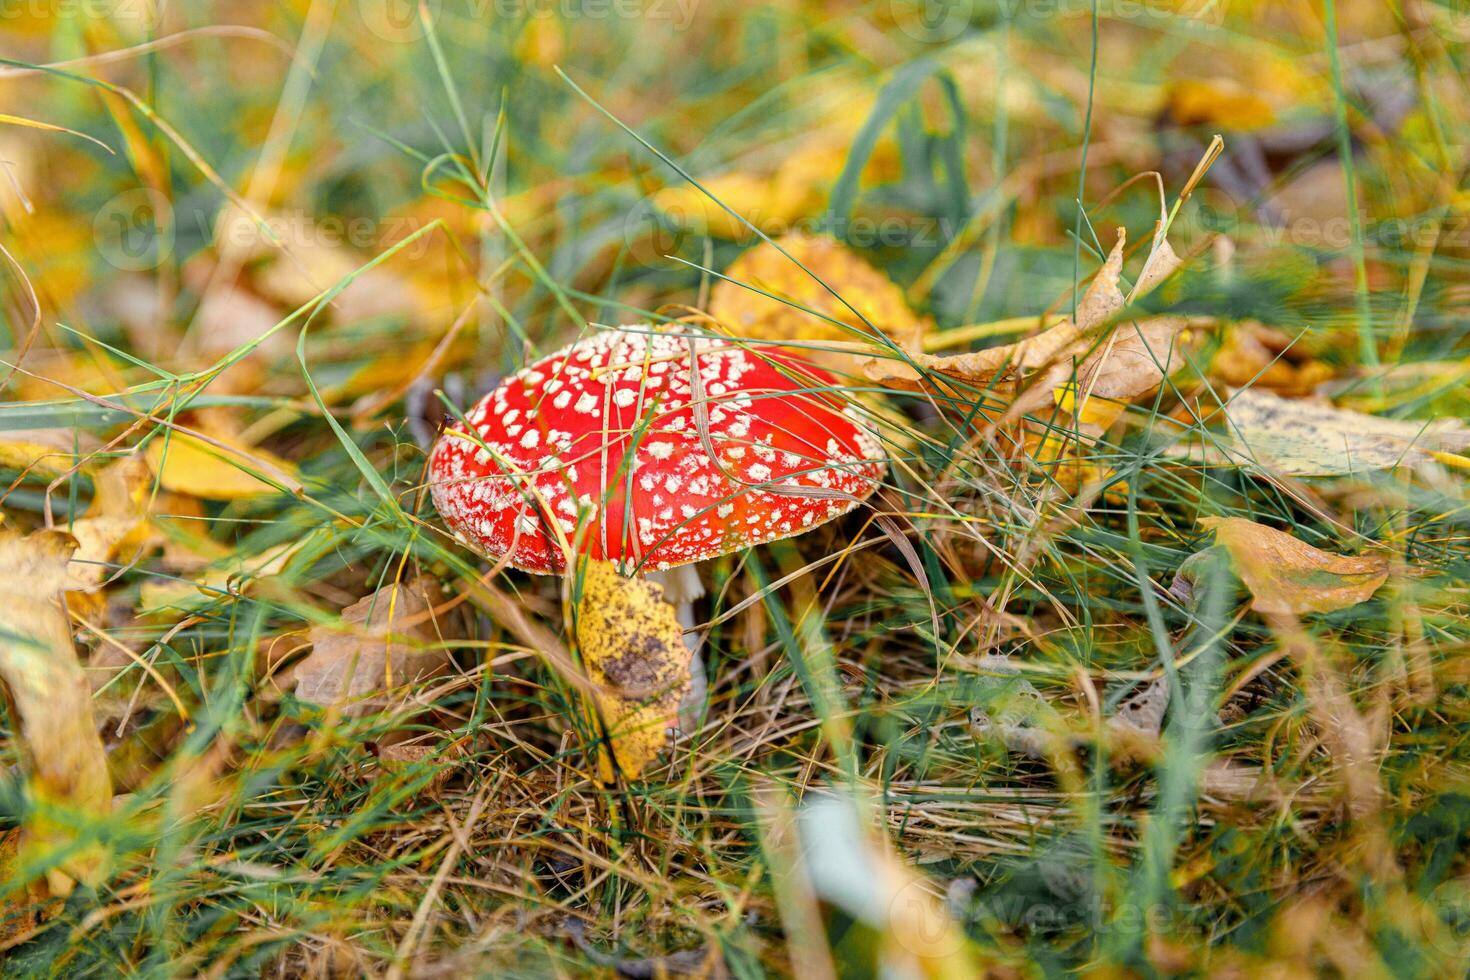 cogumelo alucinógeno tóxico voa agárico e folhas amarelas na grama na floresta de outono. vermelho venenoso amanita muscaria fungo macro close-up em ambiente natural. paisagem de outono natural inspiradora. foto